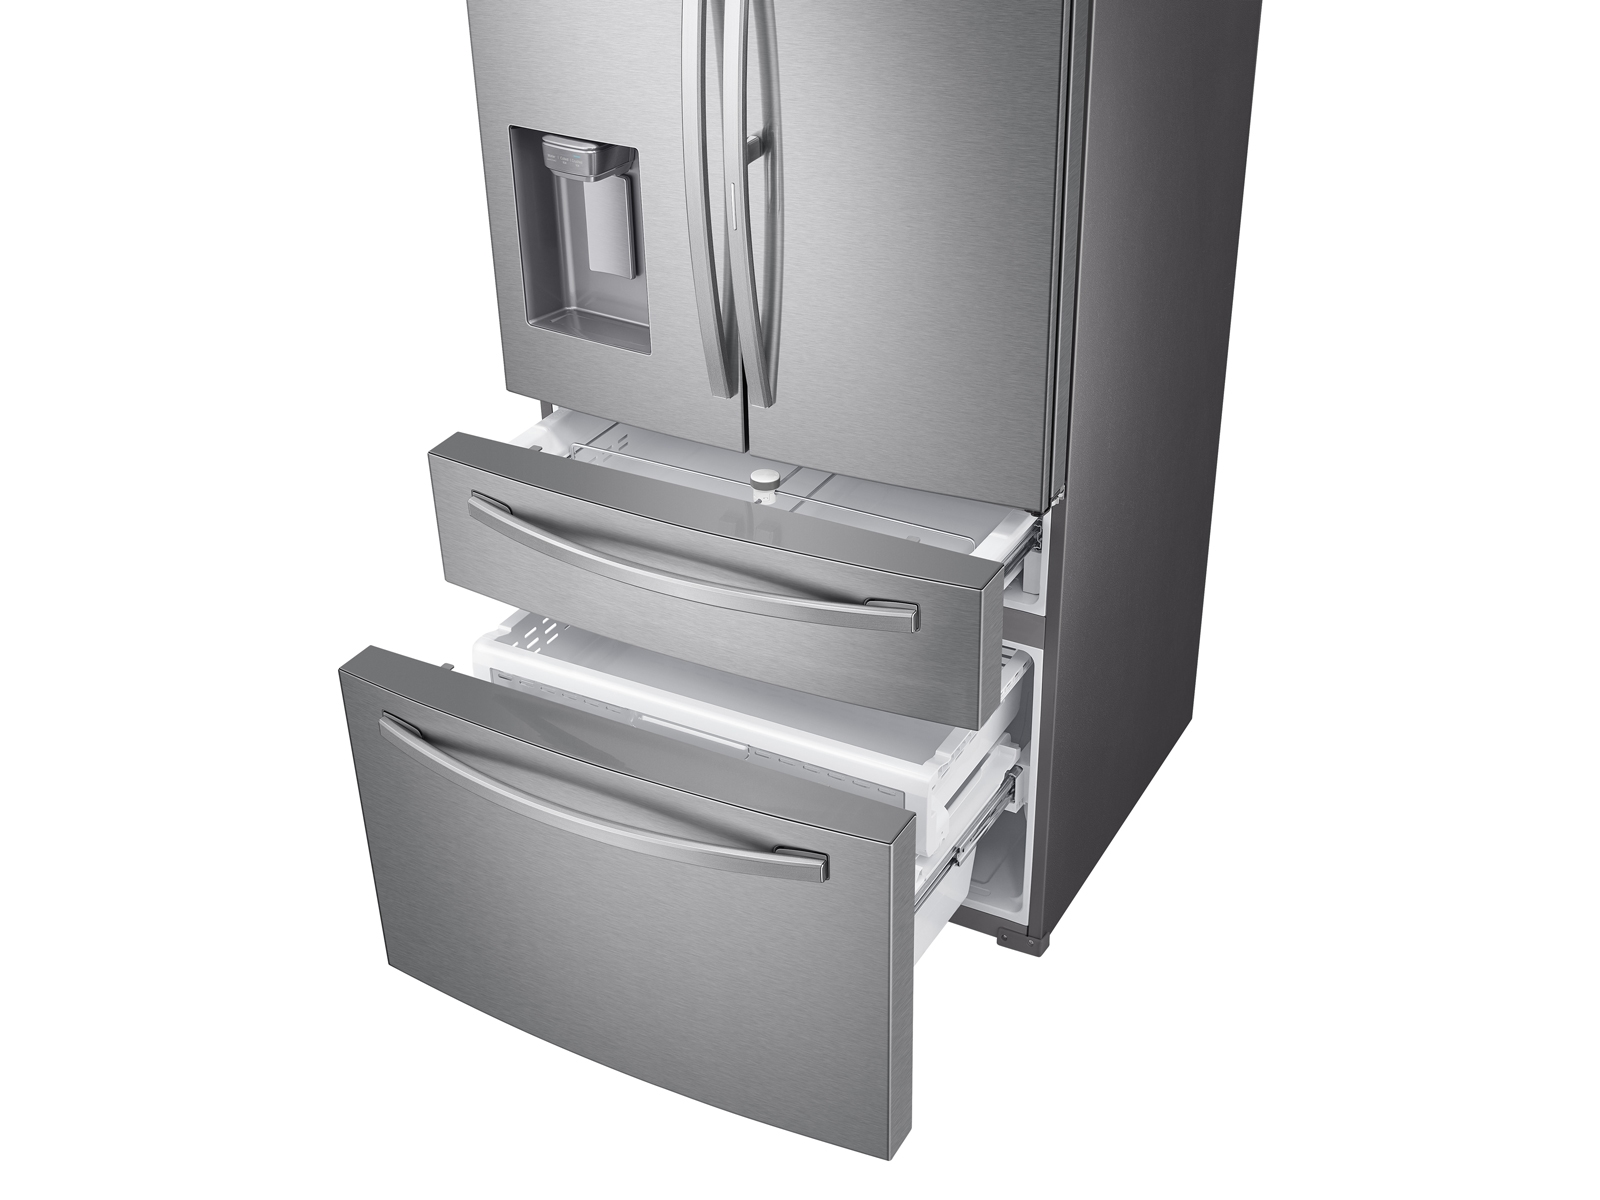 Réfrigérateur Samsung TWIN COOLING PLUS 370L RT37K5100S8 - Silver